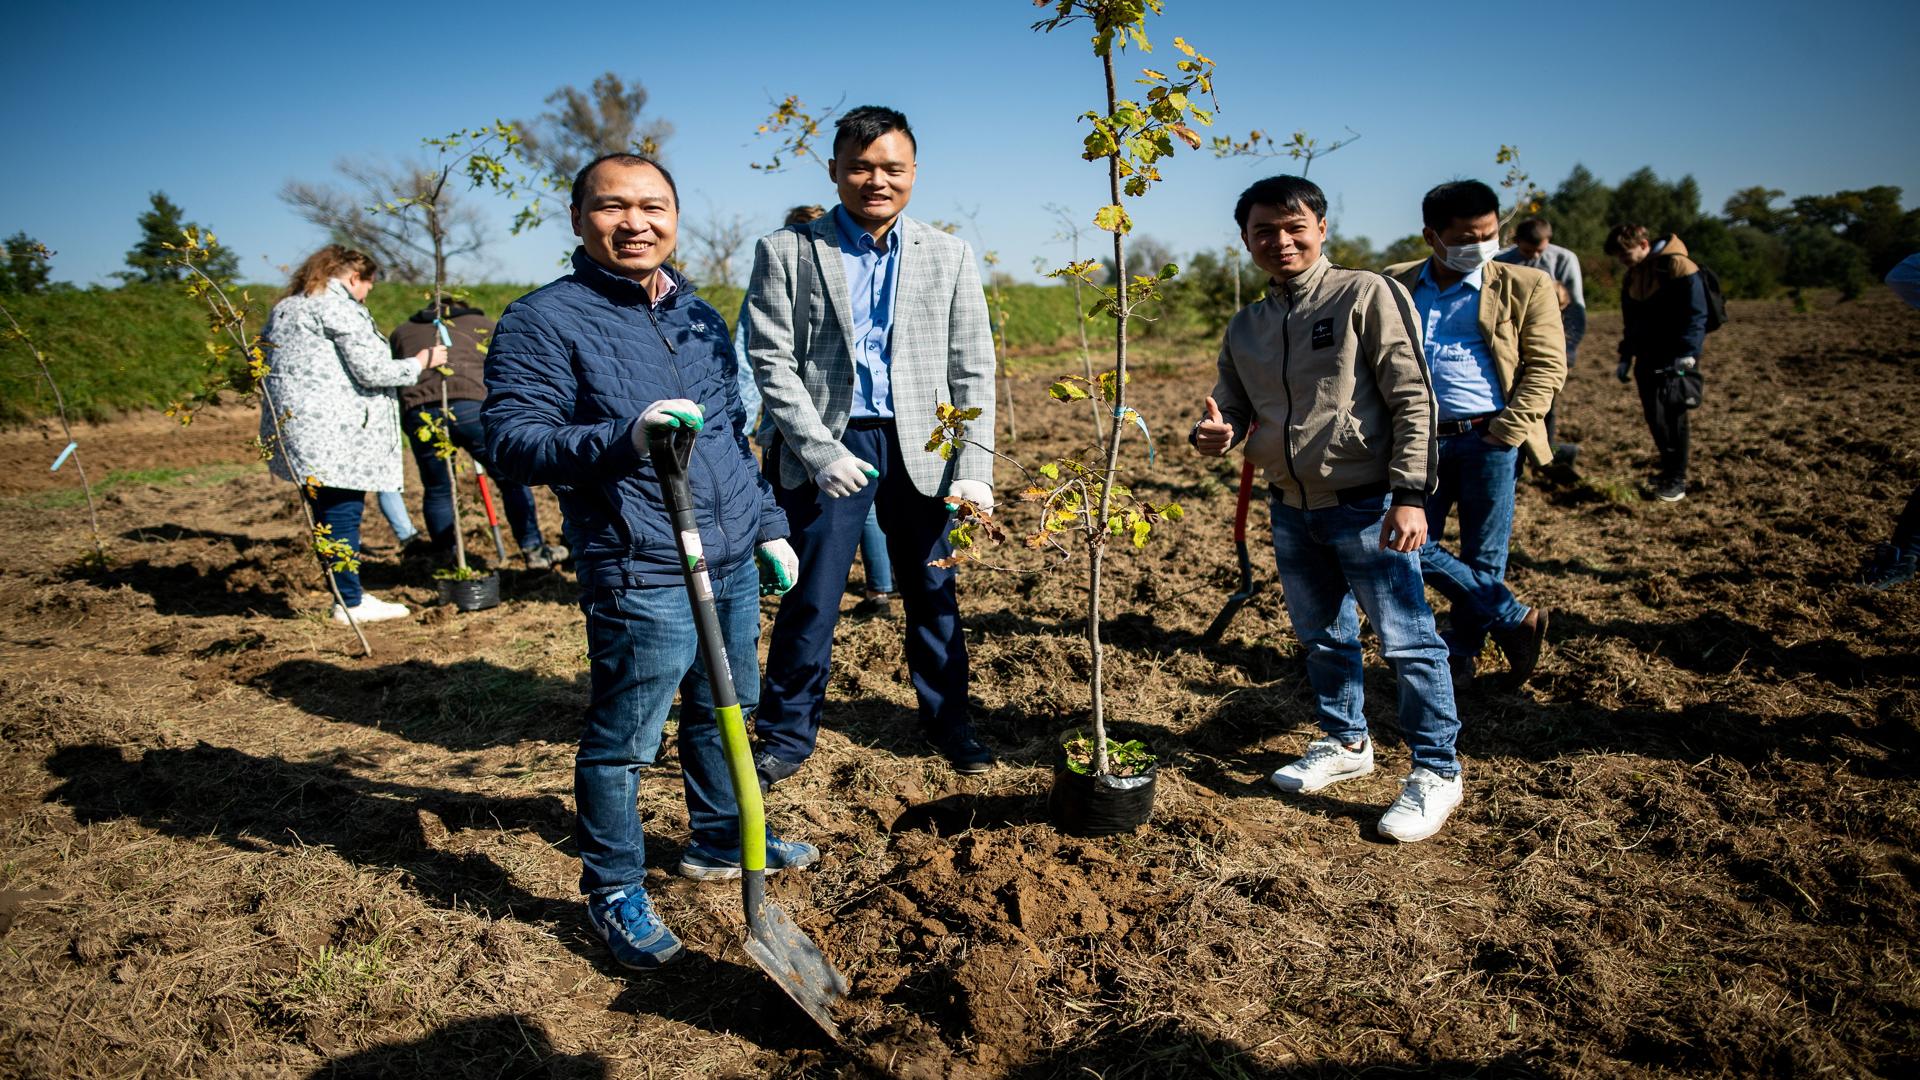 Czterech uśmiechnięteych zagranicznych studentów podczas sadzenia drzewka.